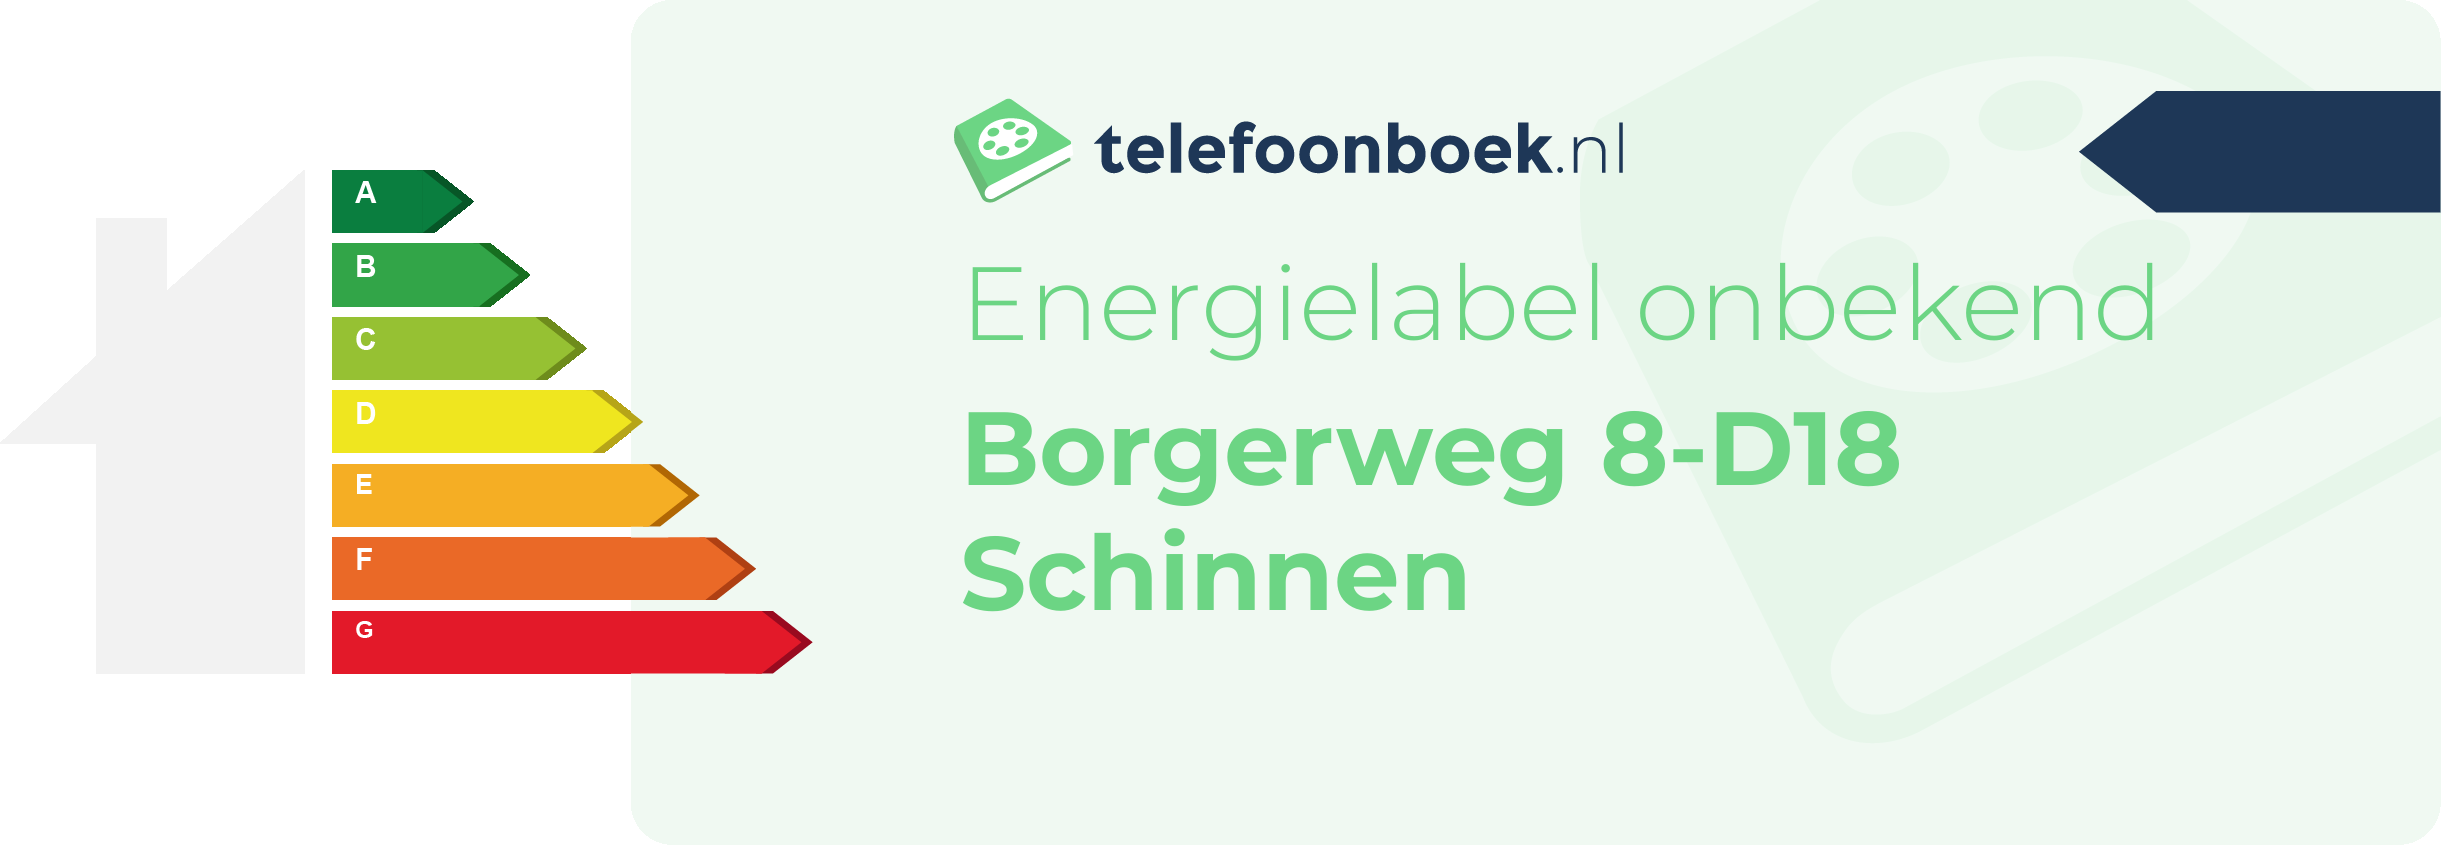 Energielabel Borgerweg 8-D18 Schinnen